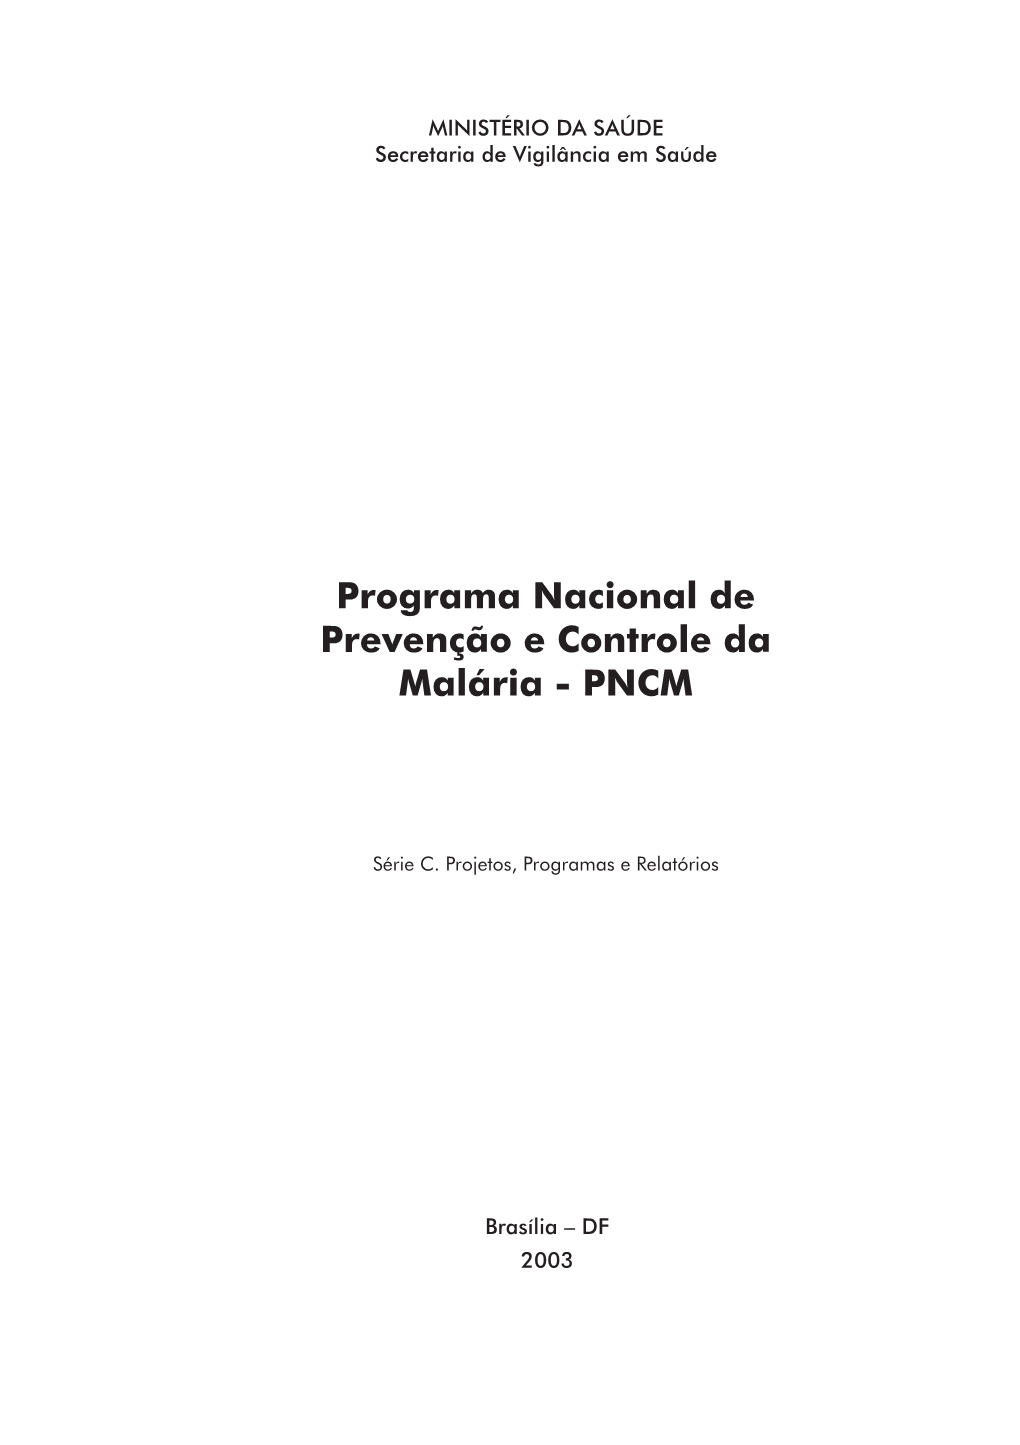 Programa Nacional De Prevenção E Controle Da Malária - PNCM